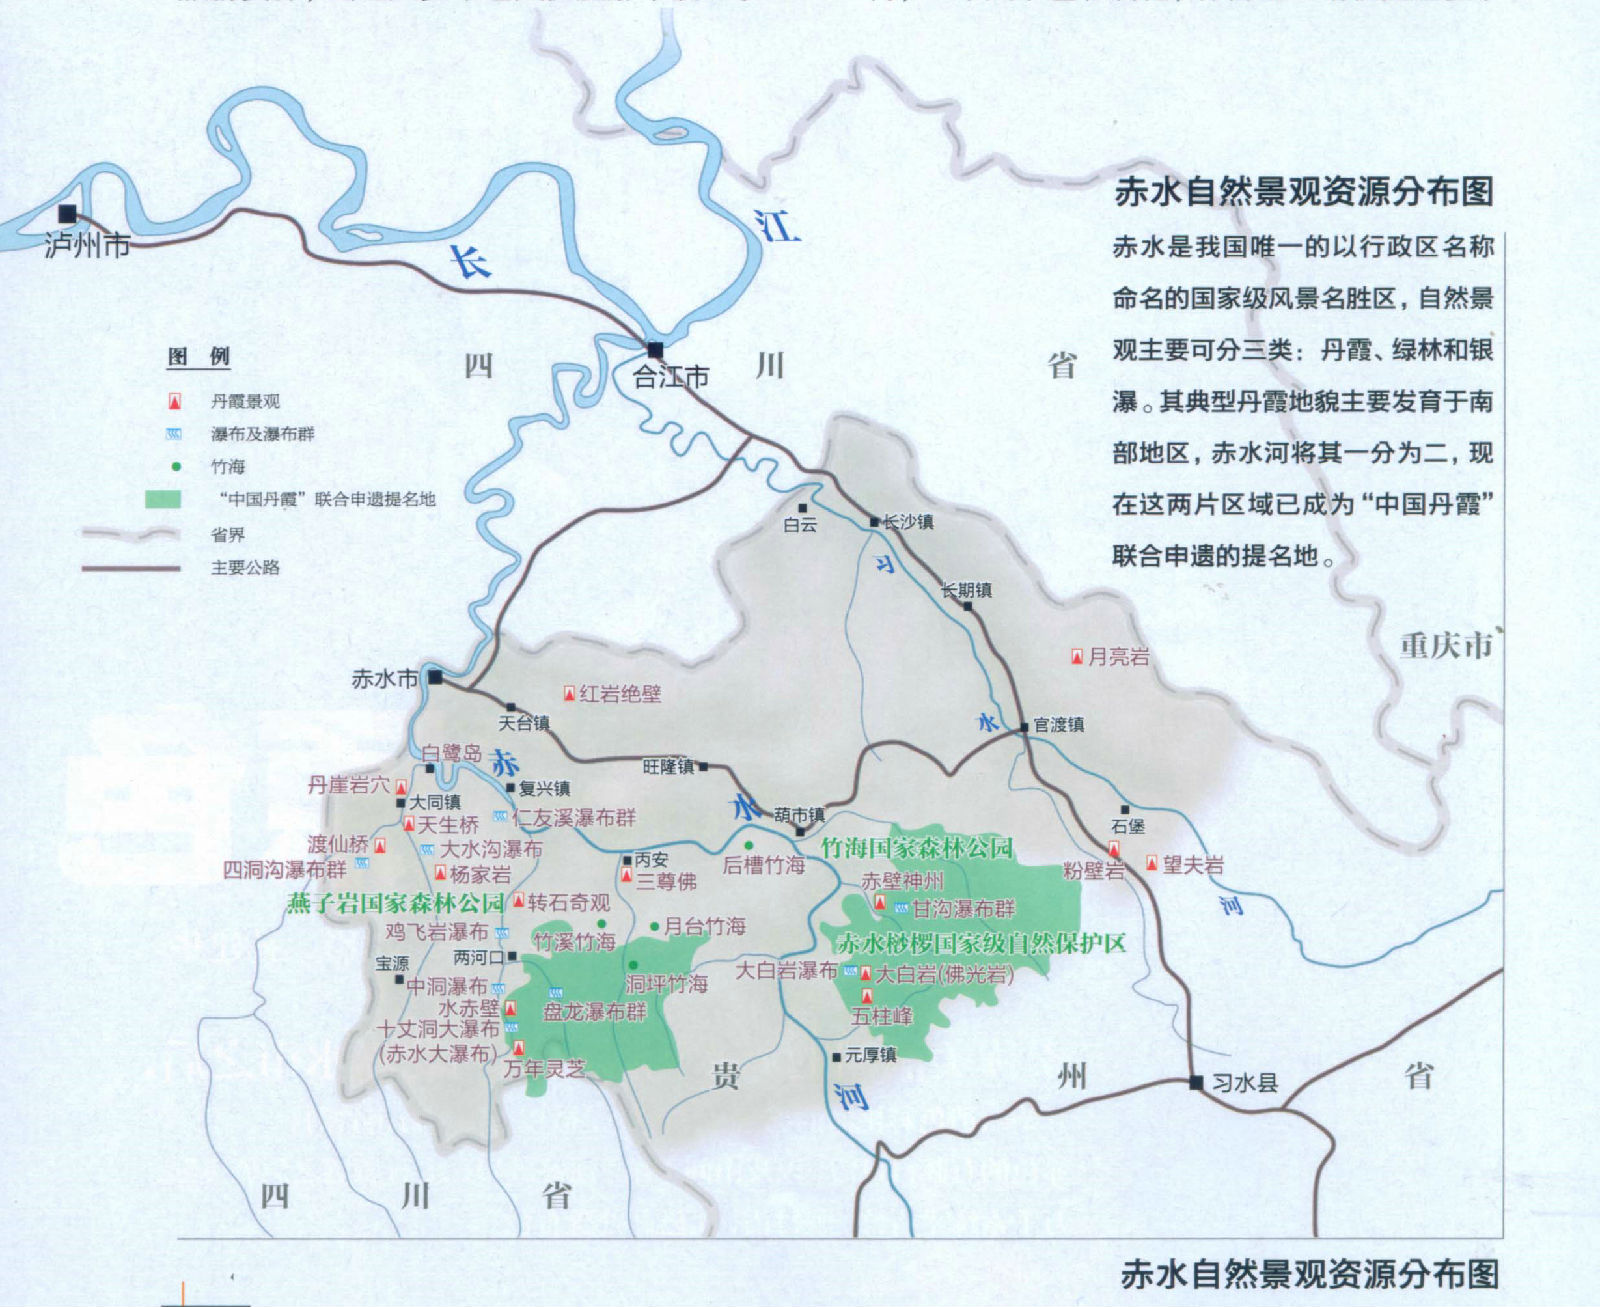 赤水丹霞世界自然遺產範圍（圖中綠色部分）